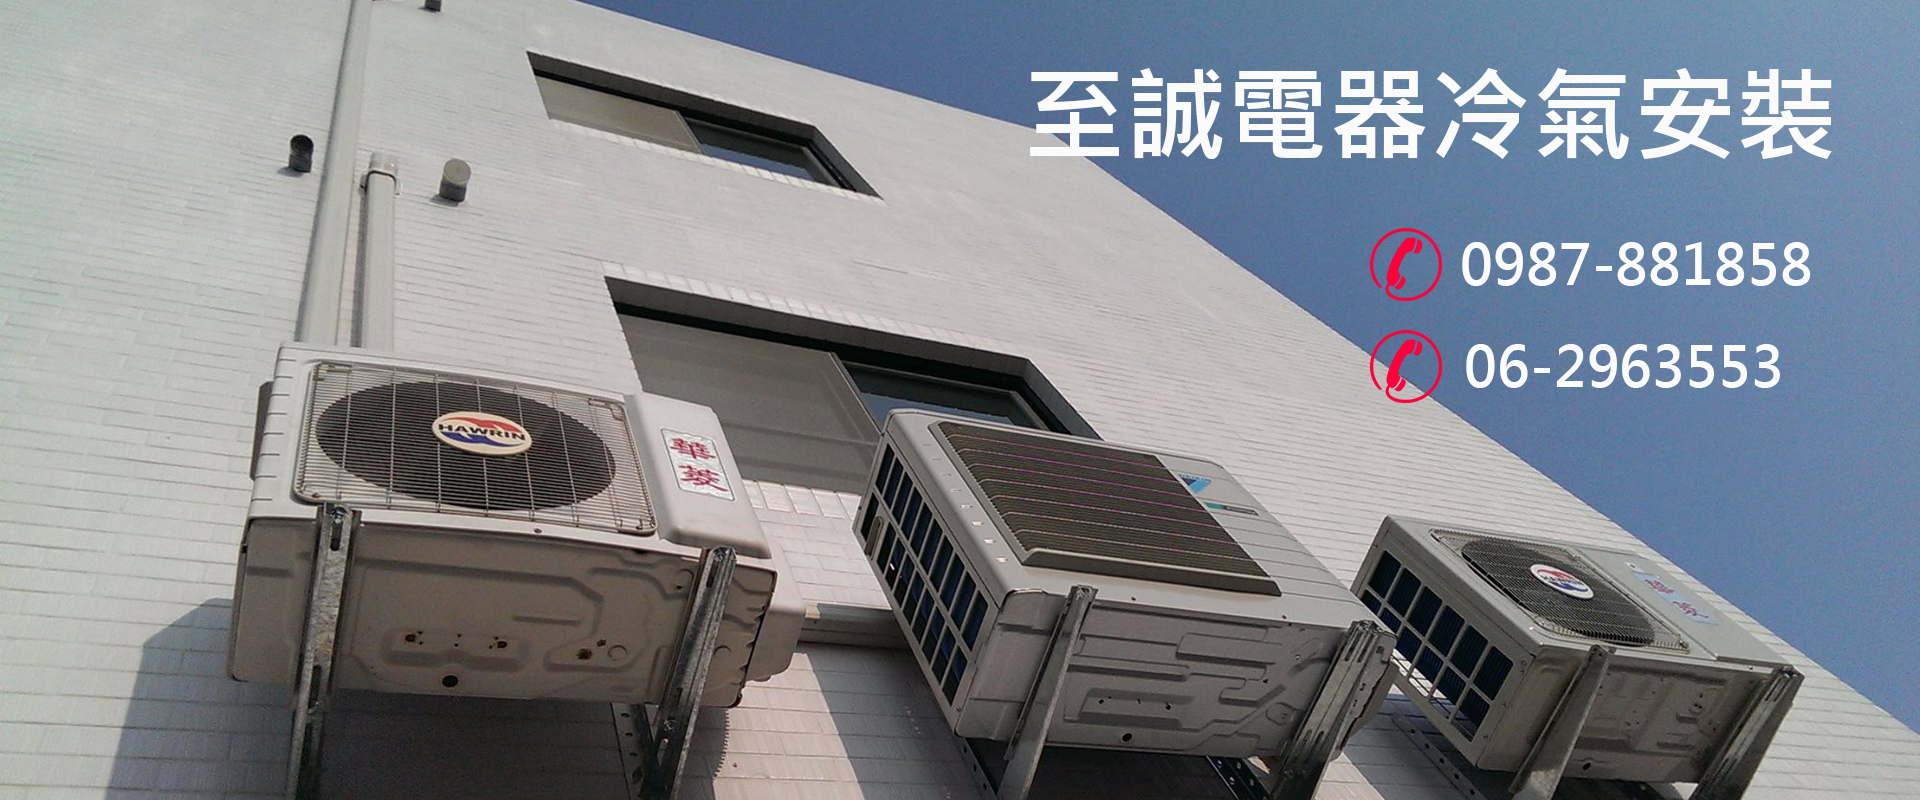 台南冷氣-台南至誠家電服務超過15年，專業技術認證乙級技師安裝